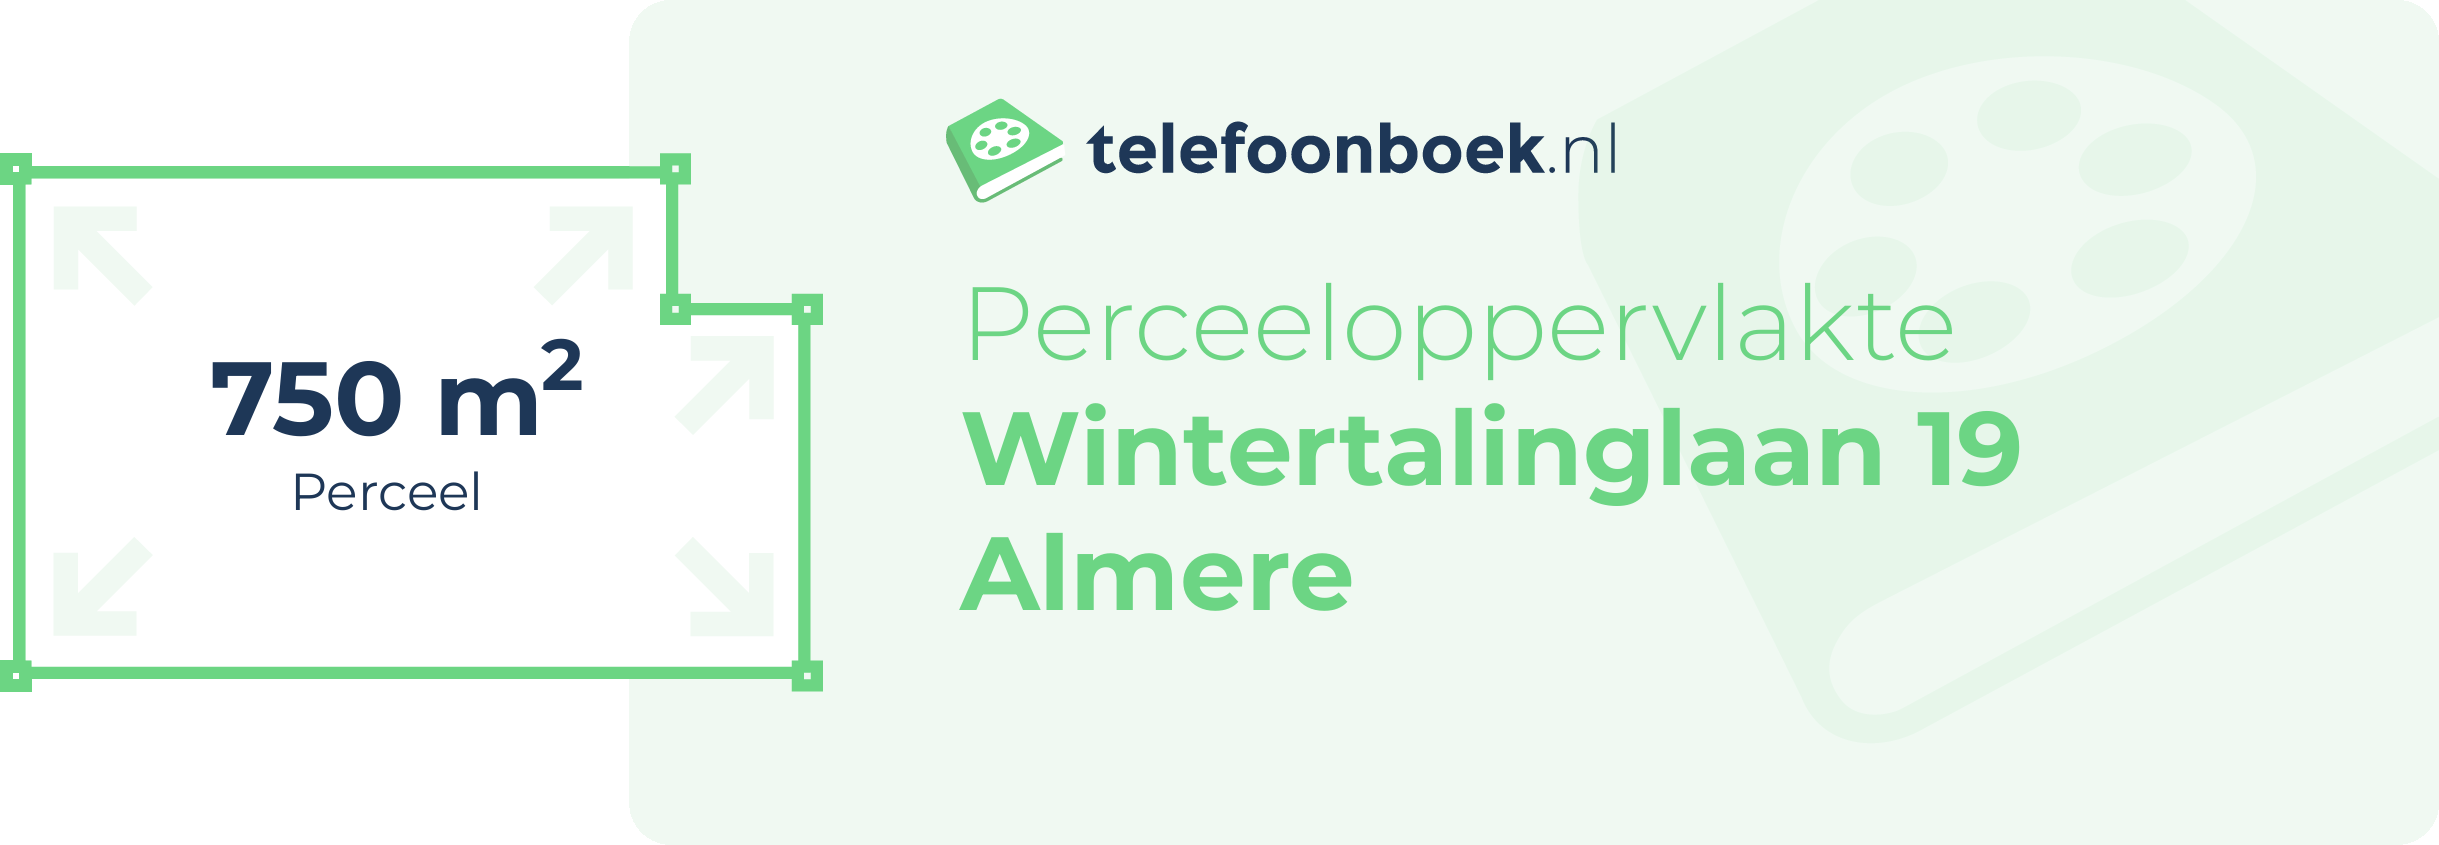 Perceeloppervlakte Wintertalinglaan 19 Almere